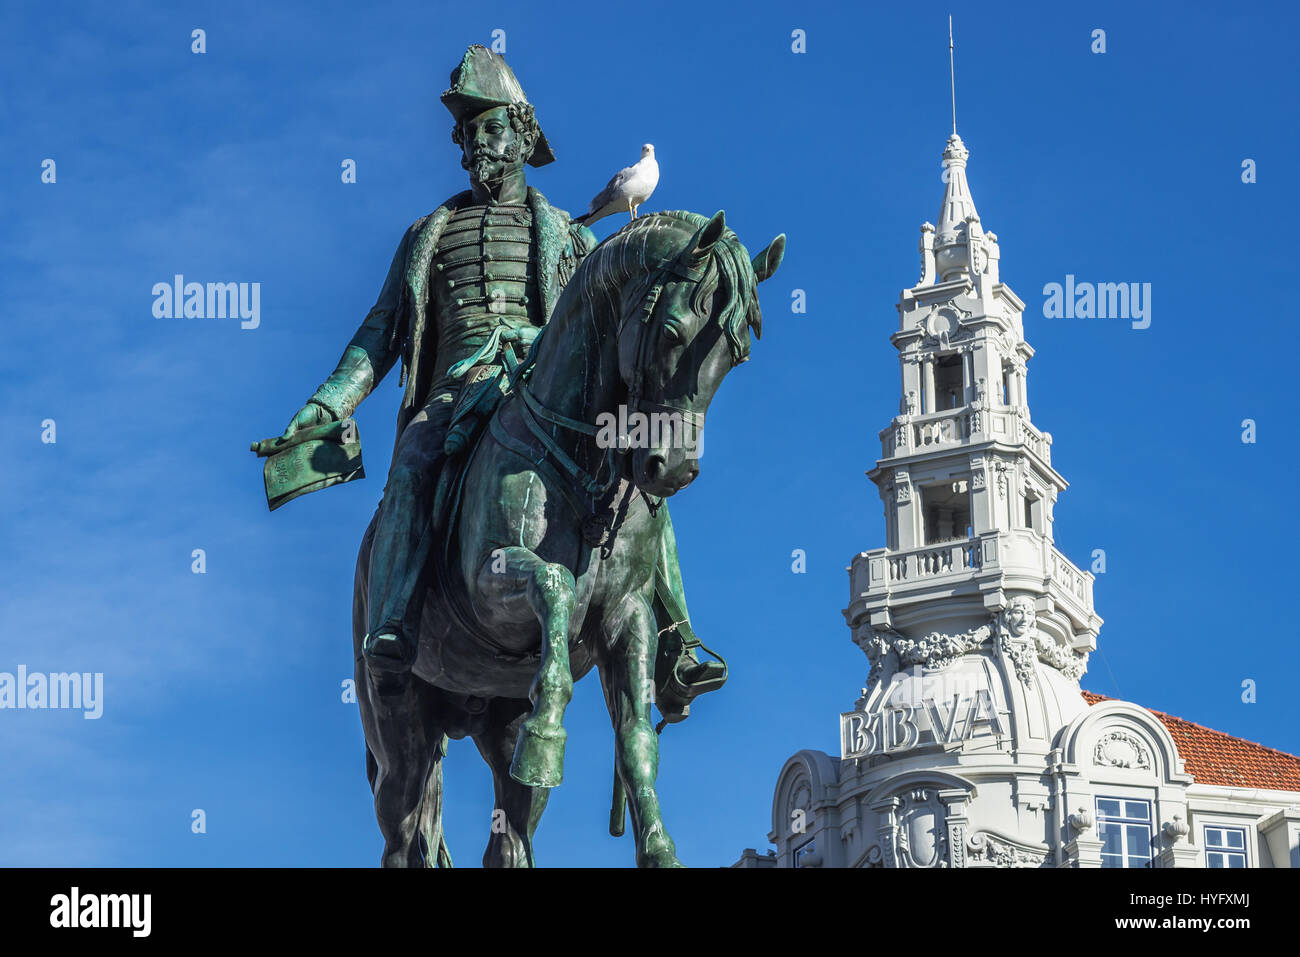 La estatua ecuestre del rey Pedro IV El Libertador en la Plaza de la libertad en Porto, Portugal. Edificio del Banco Bilbao Vizcaya Argentaria en fondo Foto de stock